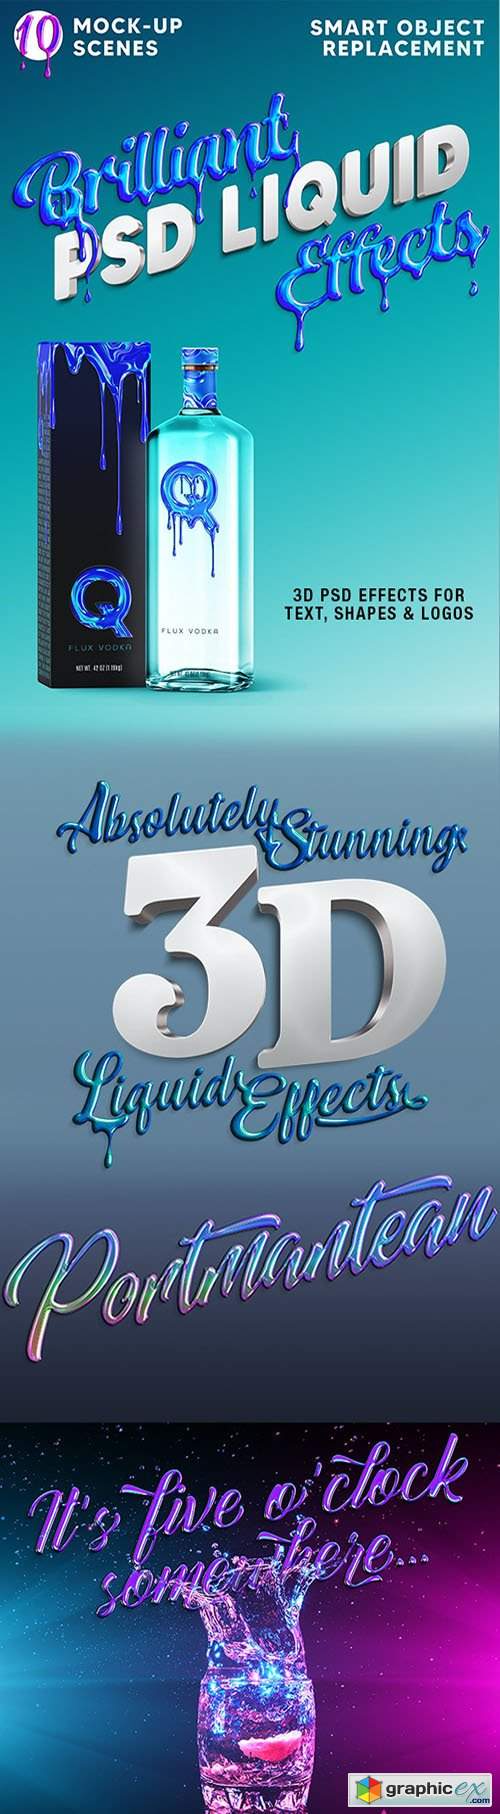 Brilliant 3D Liquid Effects 